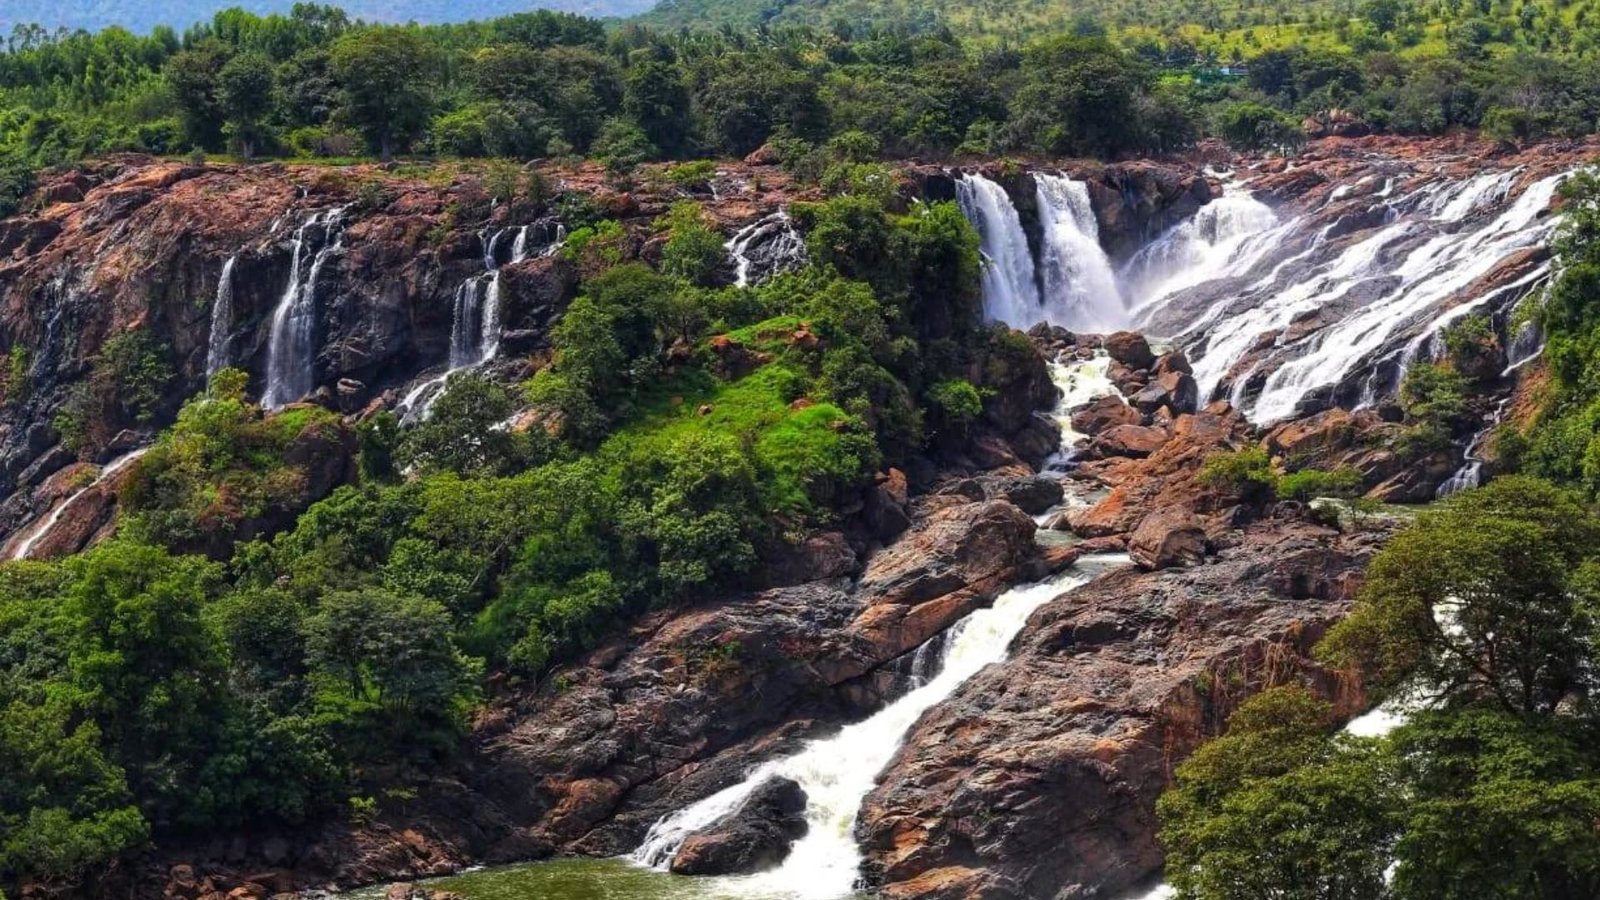 Balmuri & Edmuri Falls, Bangalore